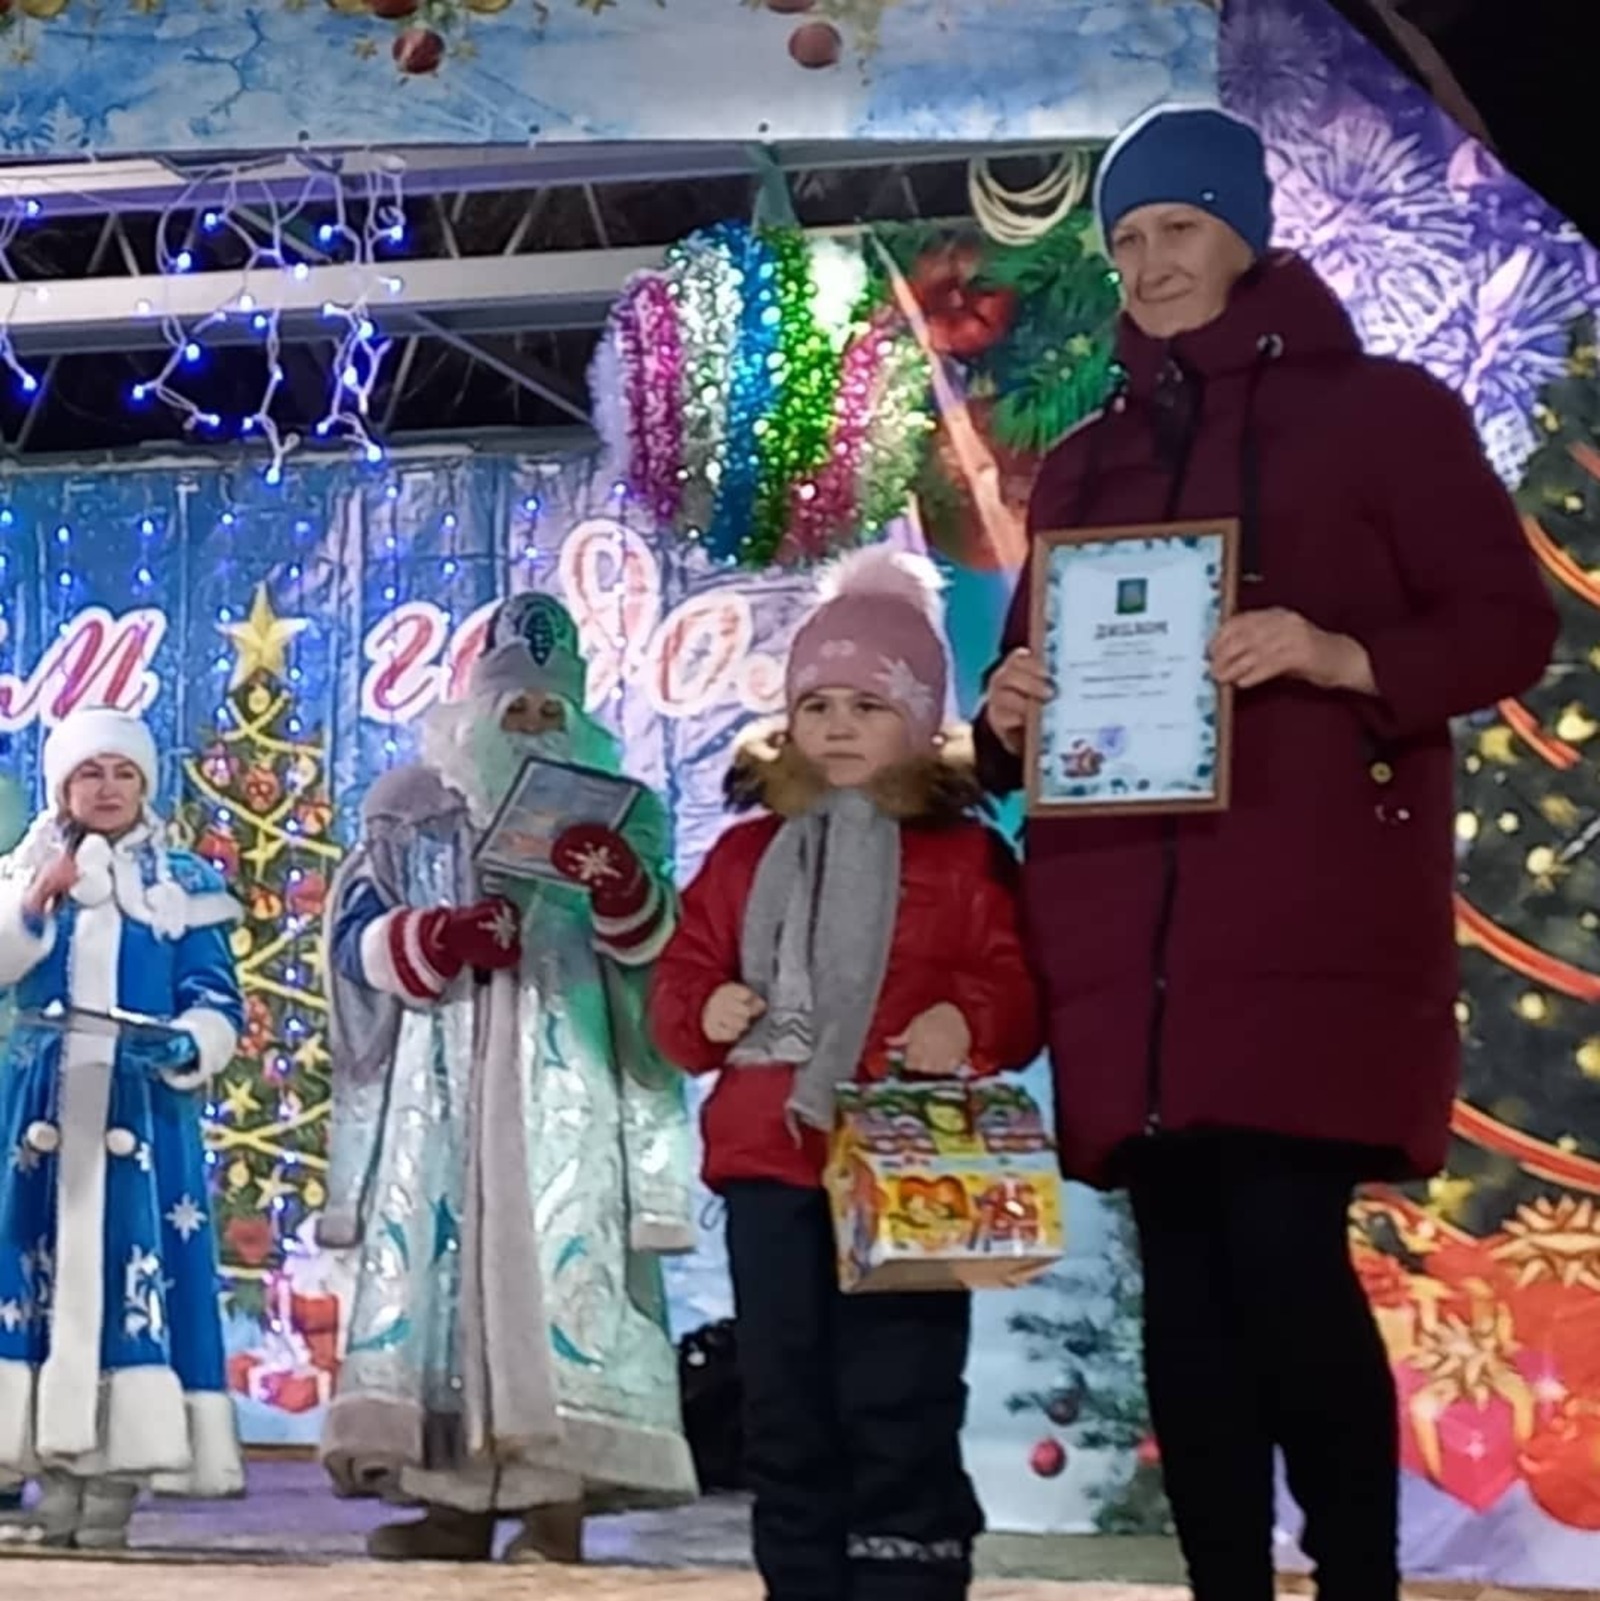 В Альшеевском районе наградили победителей конкурса "Лучшая новогодняя игрушка"